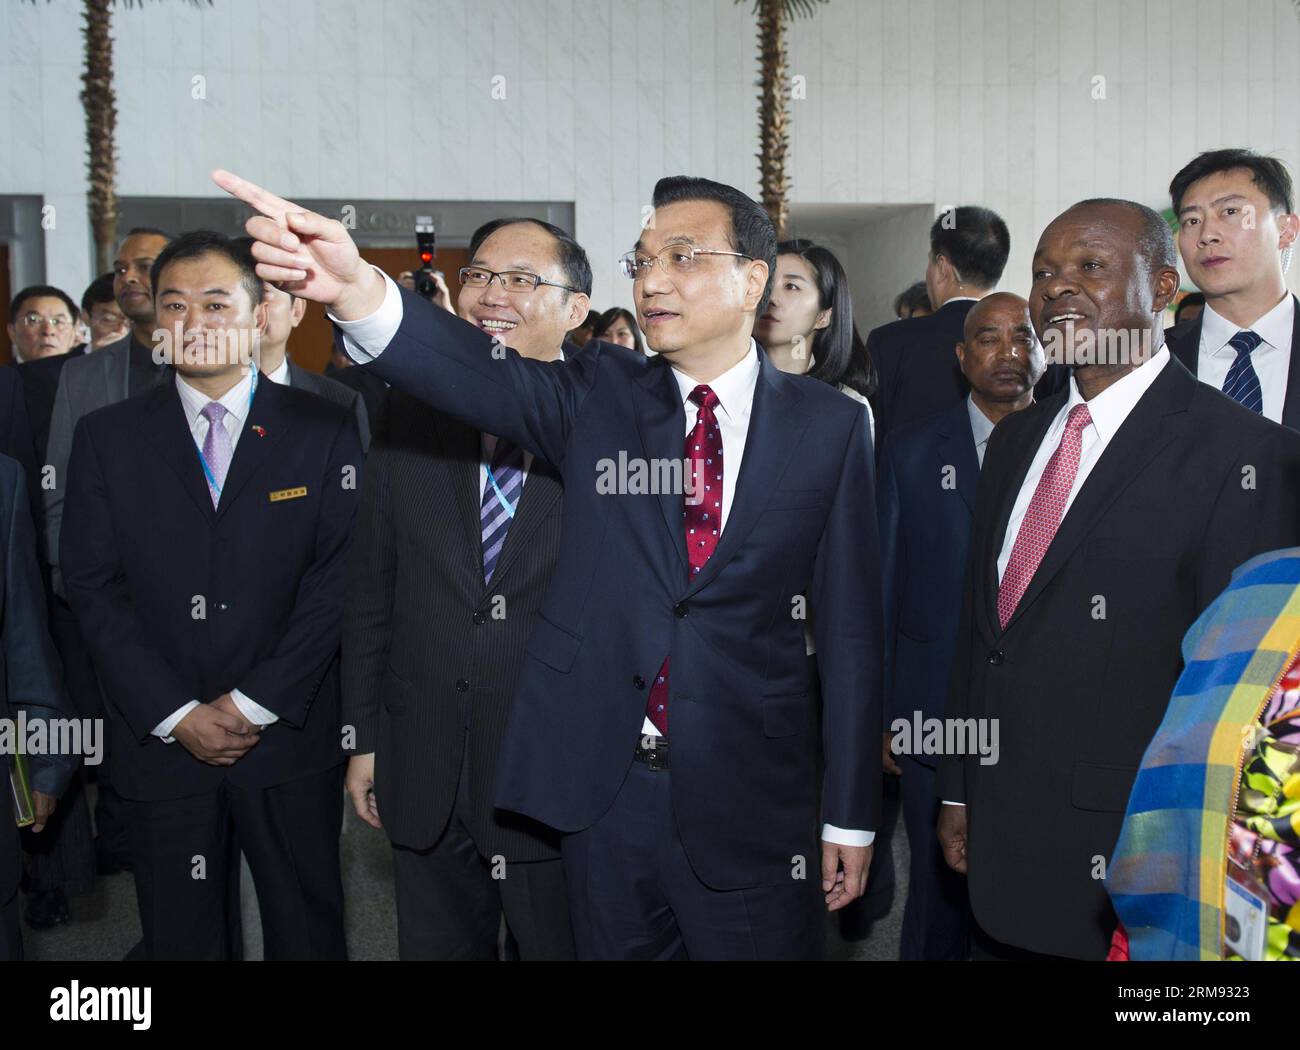 (140505) -- ADDIS ABEBA, 5. Mai 2014 (Xinhua) -- der chinesische Ministerpräsident Li Keqiang (C) besucht das Konferenzzentrum der Afrikanischen Union (AU) in Addis Abeba, Äthiopien, am 5. Mai 2014. Das AU Conference Center, dessen Bau von der chinesischen Regierung unterstützt wird, wurde hier am 28. Januar 2012 eingeweiht. (Xinhua/Wang YE) (yxb) ÄTHIOPIEN-CHINA-LI KEQIANG-AU KONFERENZZENTRUM-BESUCH PUBLICATIONxNOTxINxCHN Addis Abeba 5. Mai 2014 XINHUA chinesischer Ministerpräsident links Keqiang C besucht Au Konferenzzentrum der Afrikanischen Union in Addis Abeba Äthiopien 5. Mai 2014 das Au Konferenzzentrum, dessen Bau Sponsore IST Stockfoto